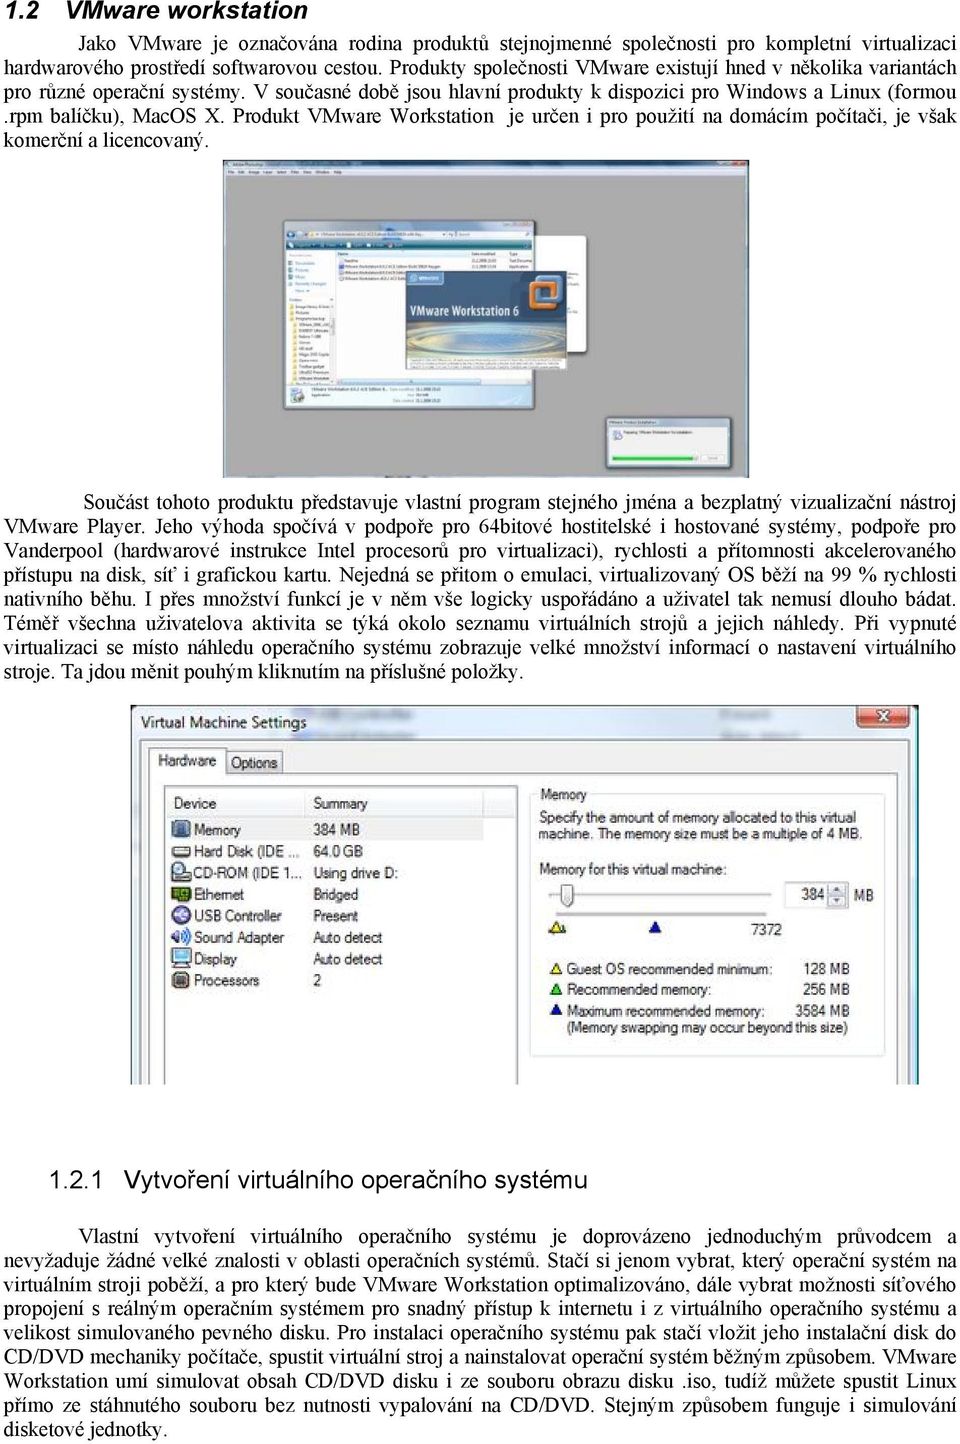 Produkt VMware Workstation je určen i pro použití na domácím počítači, je však komerční a licencovaný.